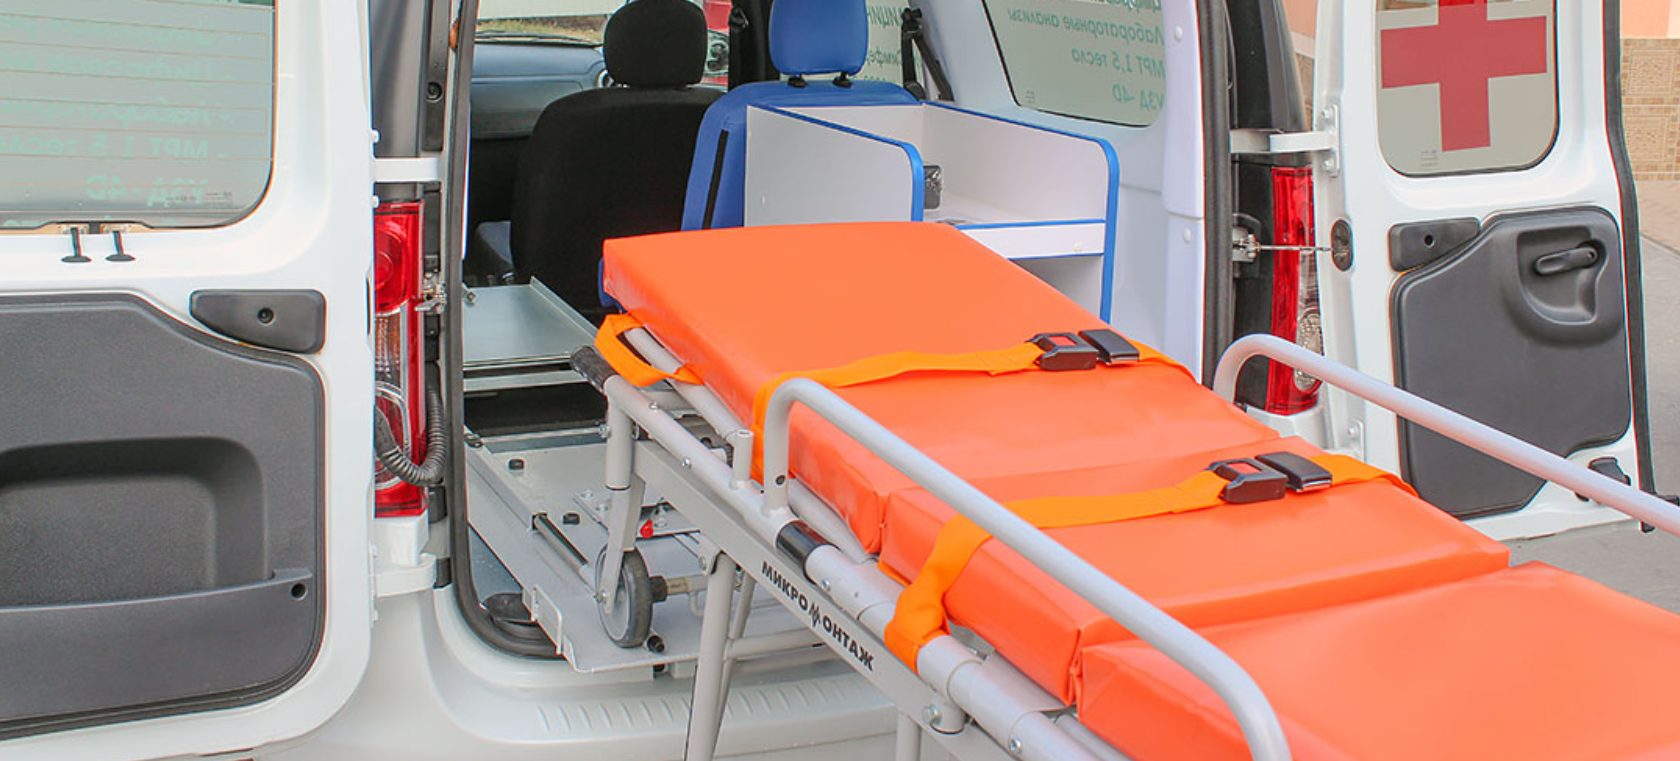 Медицинская транспортировка лежачих больных: как и где заказывают?